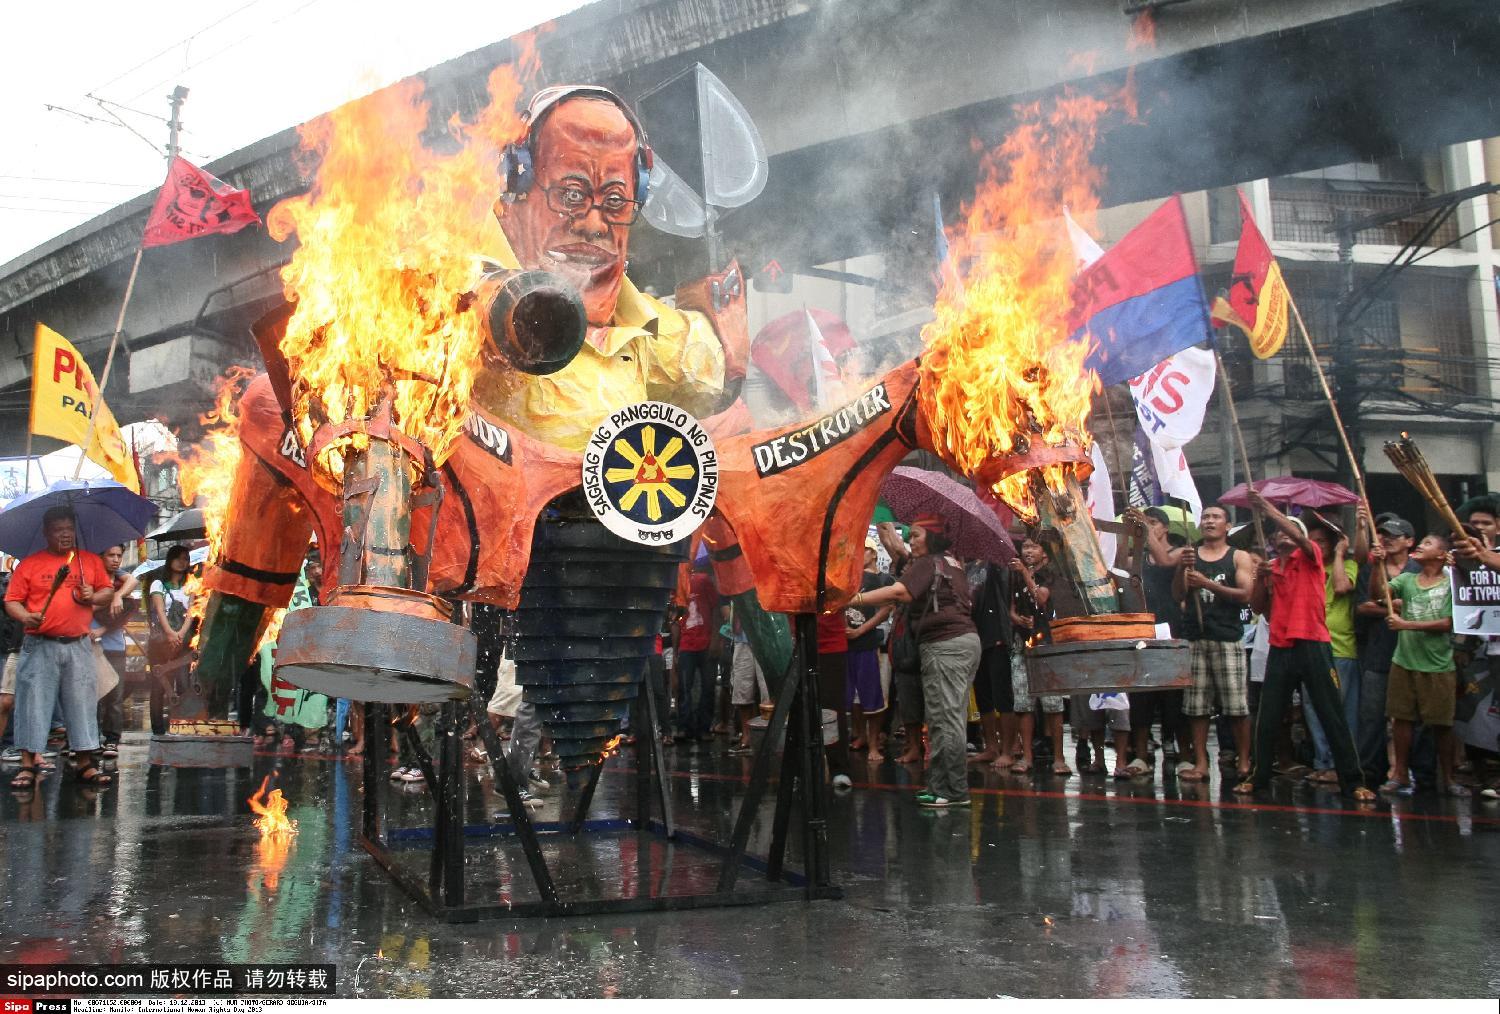 “菲民众游行焚烧阿基诺人像纪念世界人权日